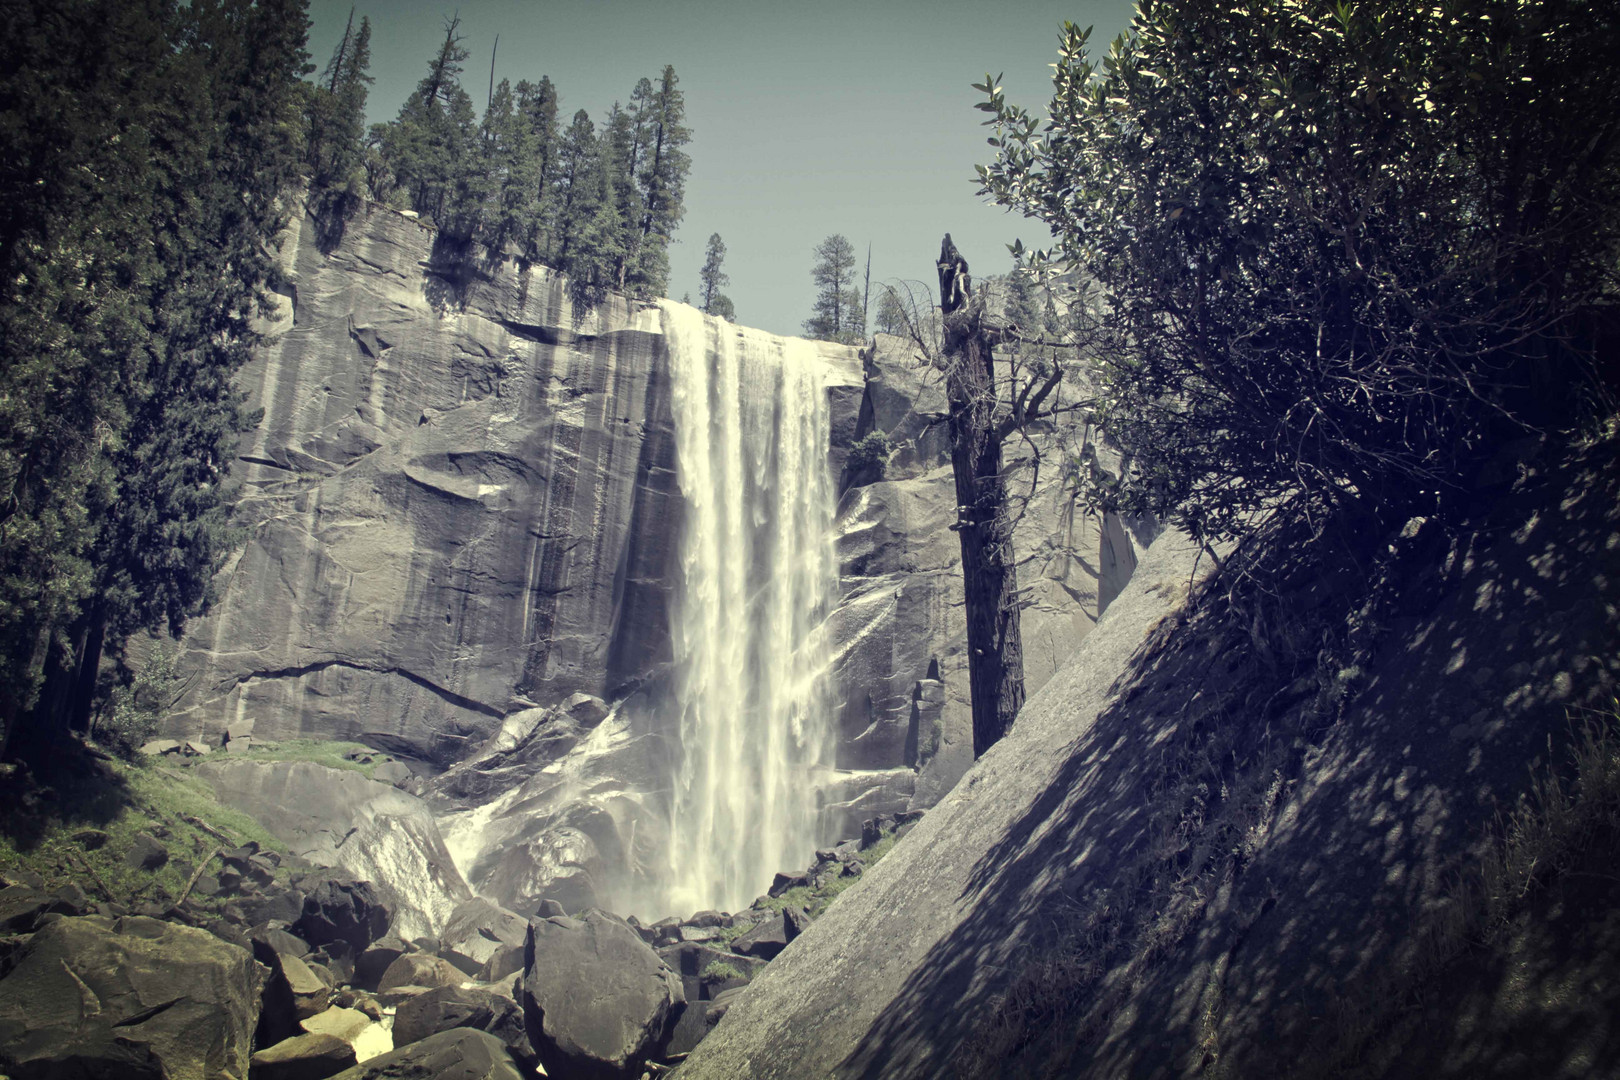 Yosemite - Vernal Falls